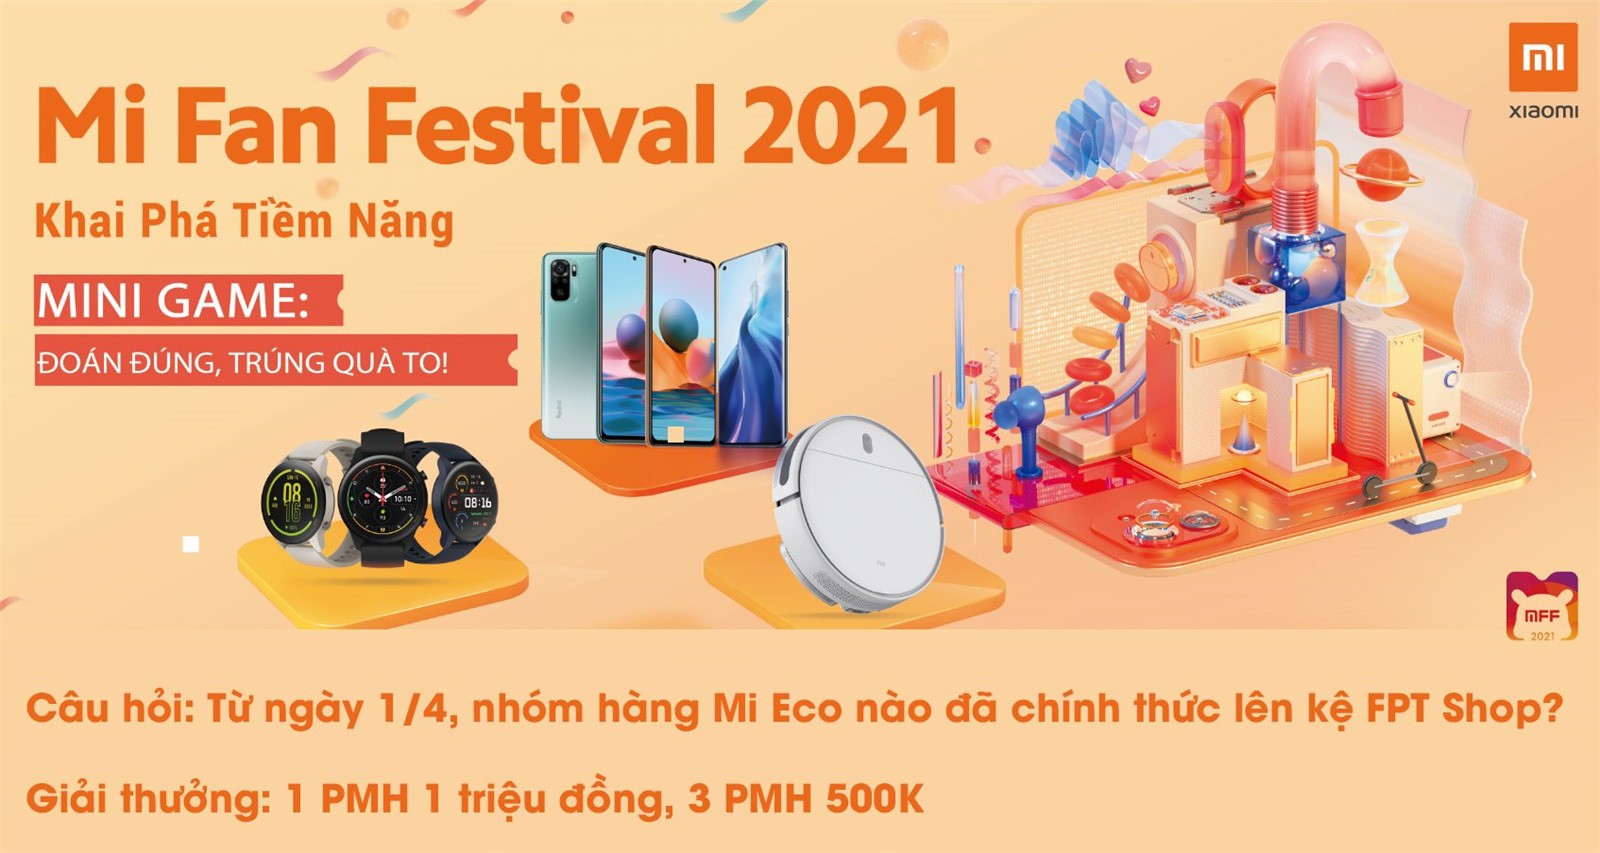 Minigame Xiaomi Mi Eco 1: ĐOÁN ĐÚNG, TRÚNG QUÀ TO!